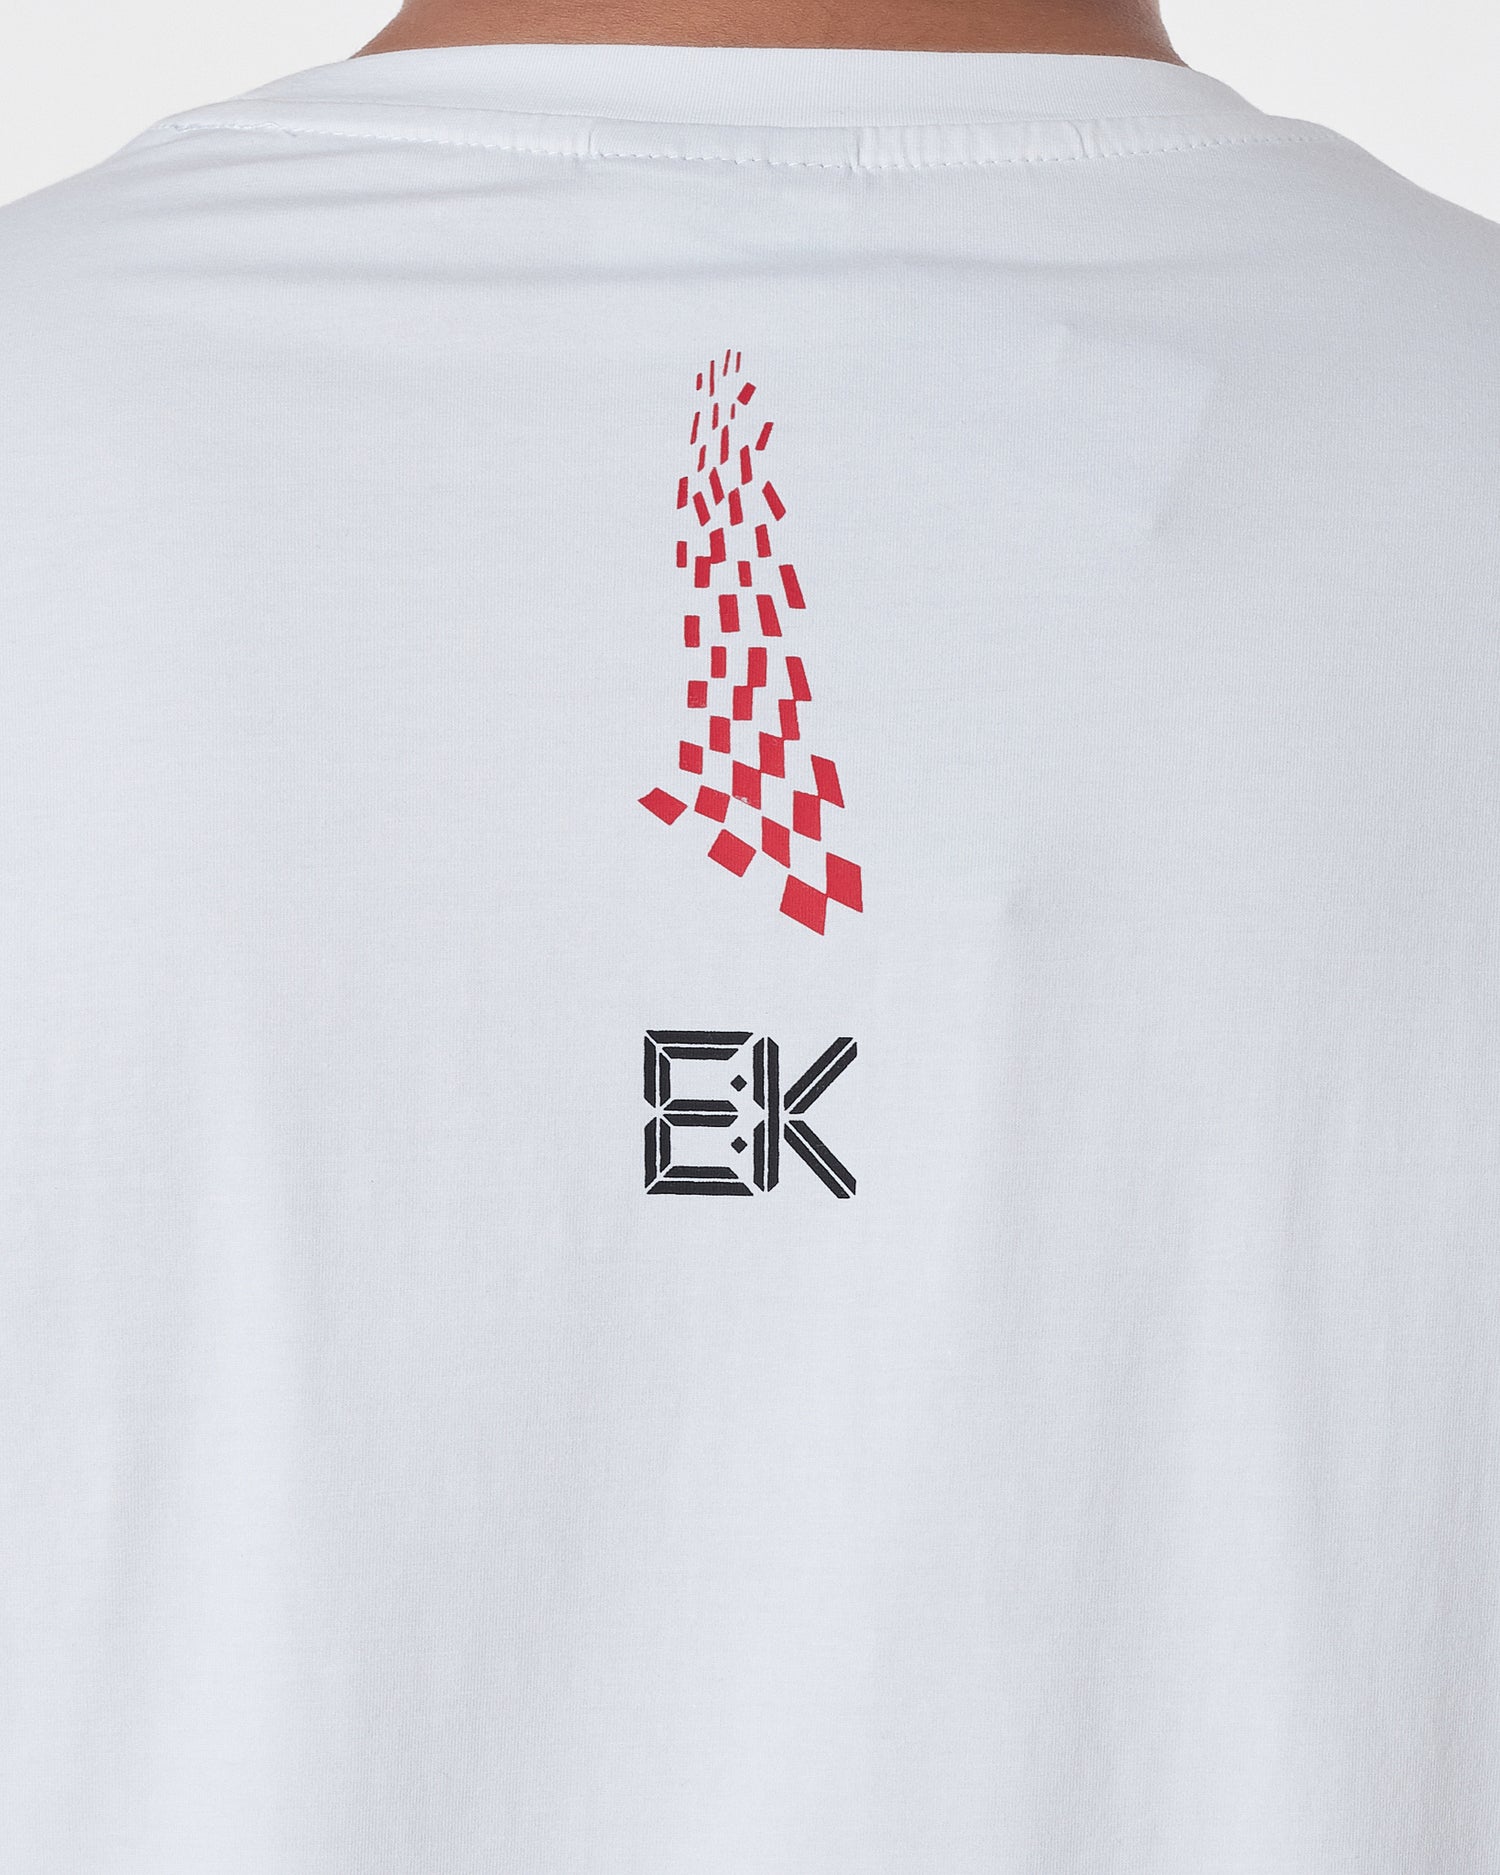 NIK Swooh Logo Printed Men White T-Shirt 14.50